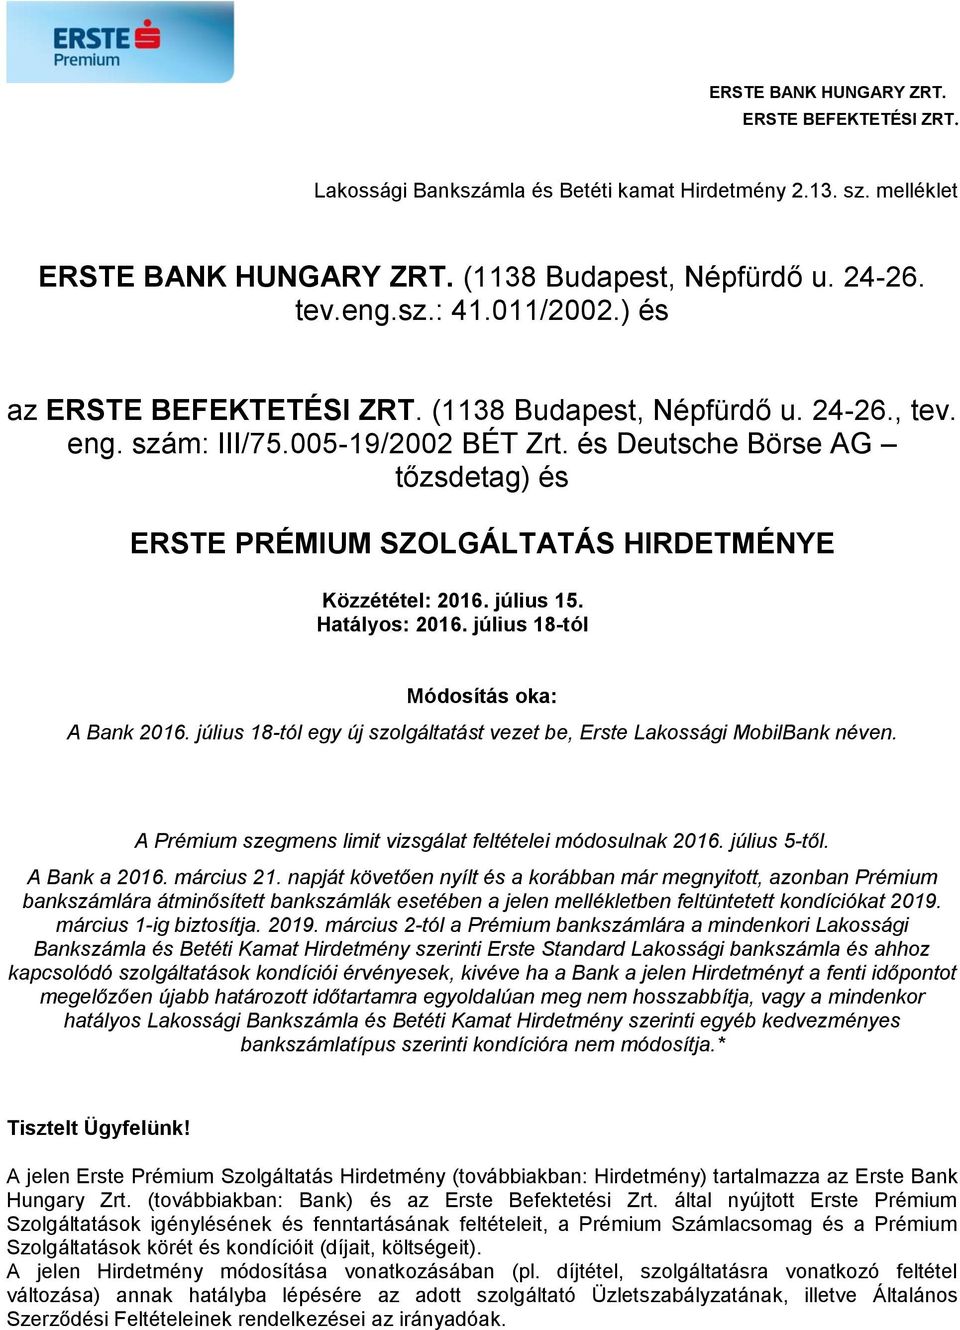 július 18-tól egy új szolgáltatást vezet be, Erste Lakossági MobilBank néven. A Prémium szegmens limit vizsgálat feltételei módosulnak 2016. július 5-től. A Bank a 2016. március 21.